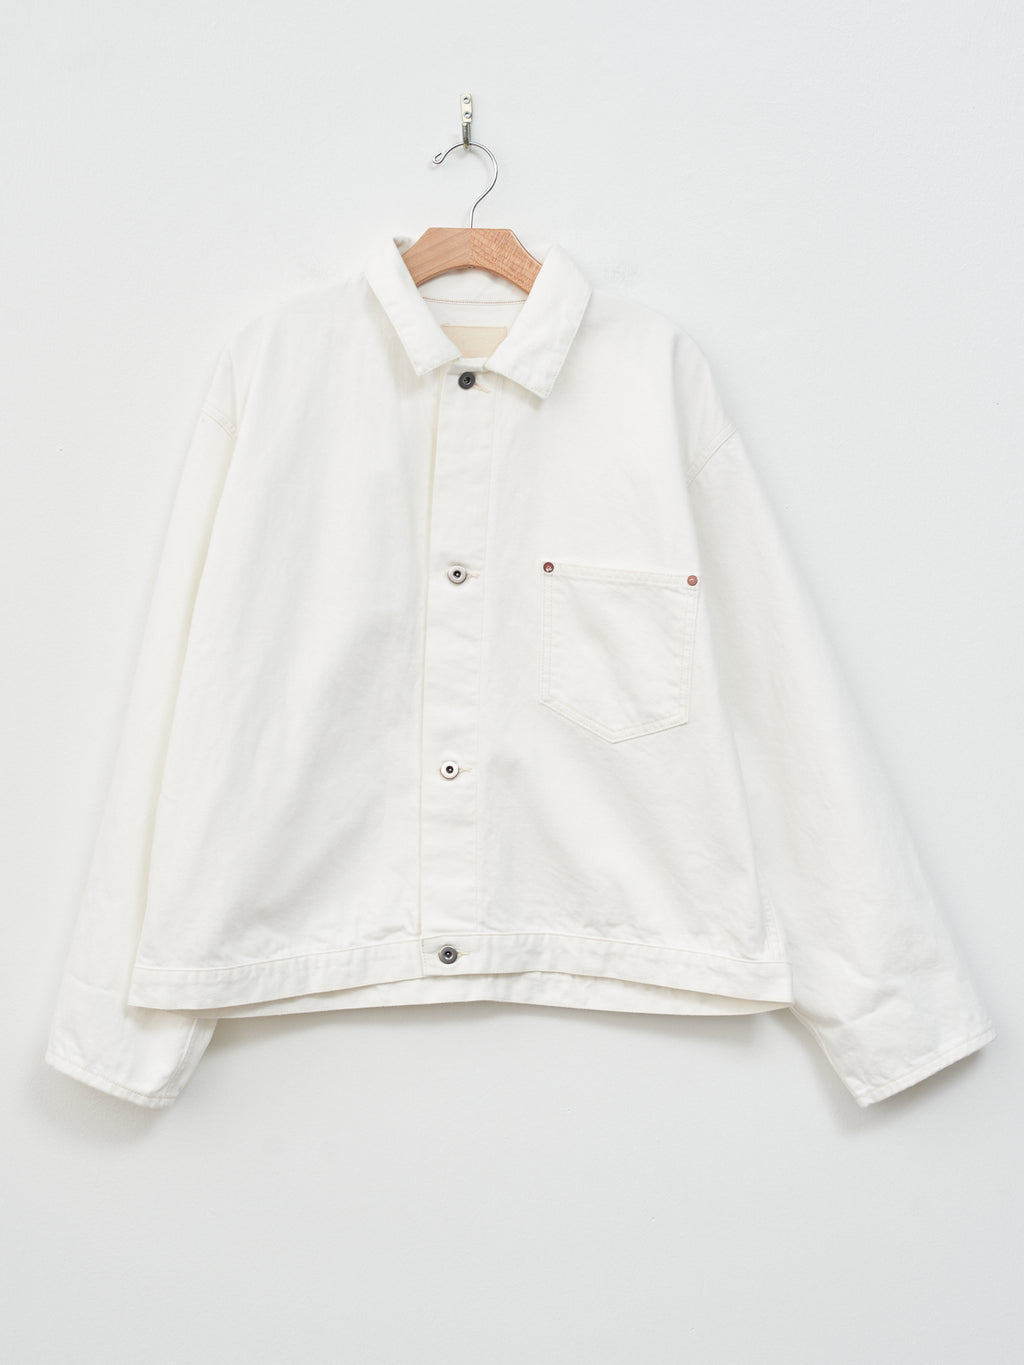 Namu Shop - Yoko Sakamoto Denim Blouse Jacket - White (One Wash)